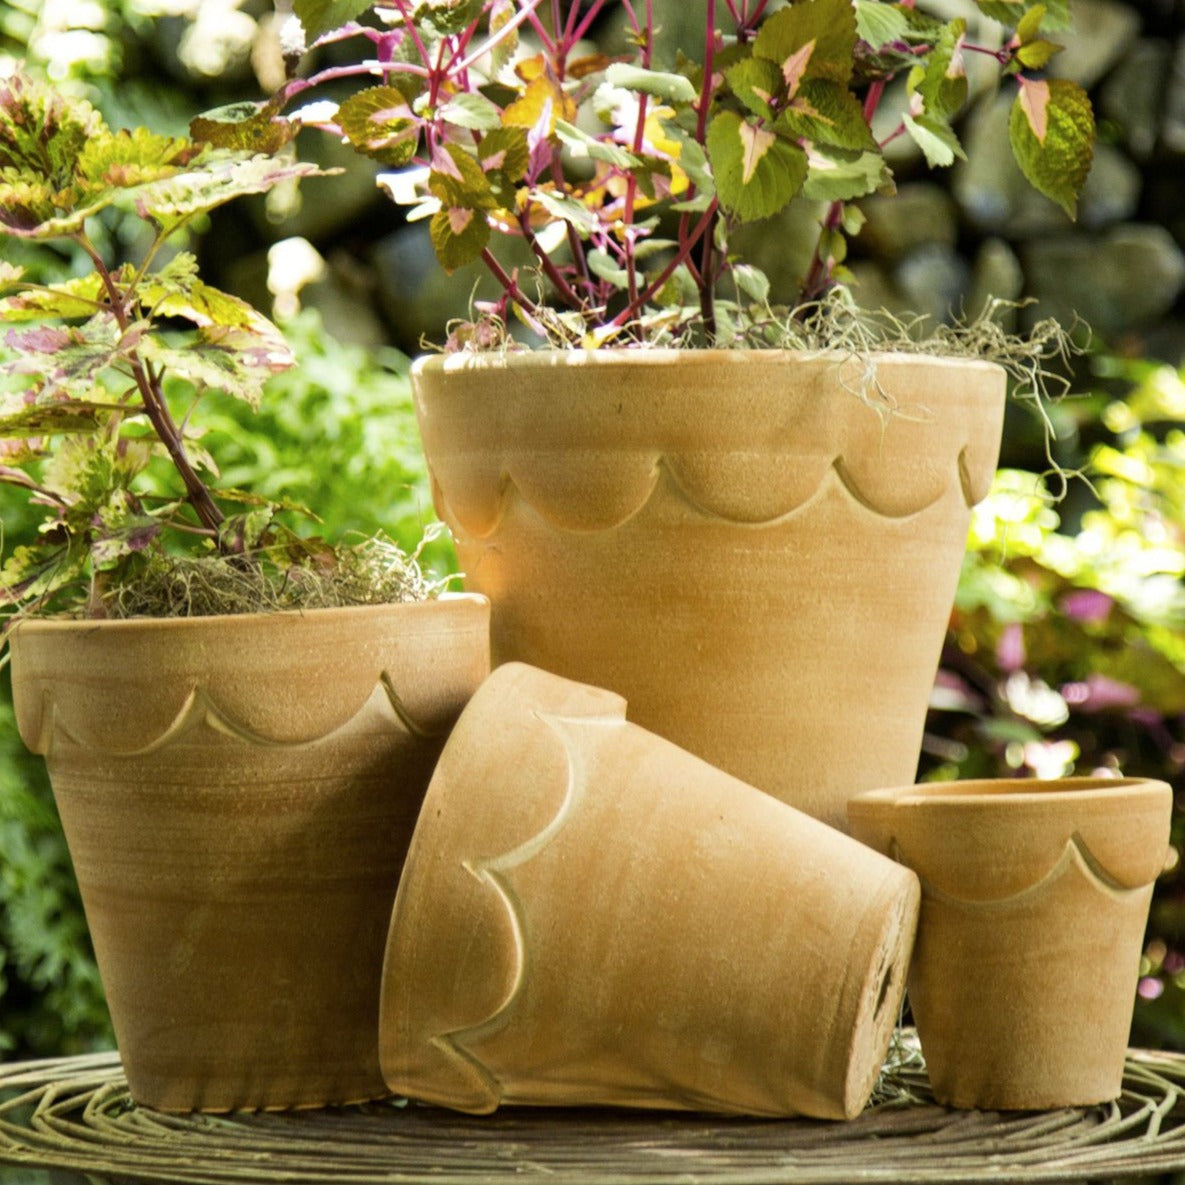 Outdoor Planters, Patio Planters & Plant Pots